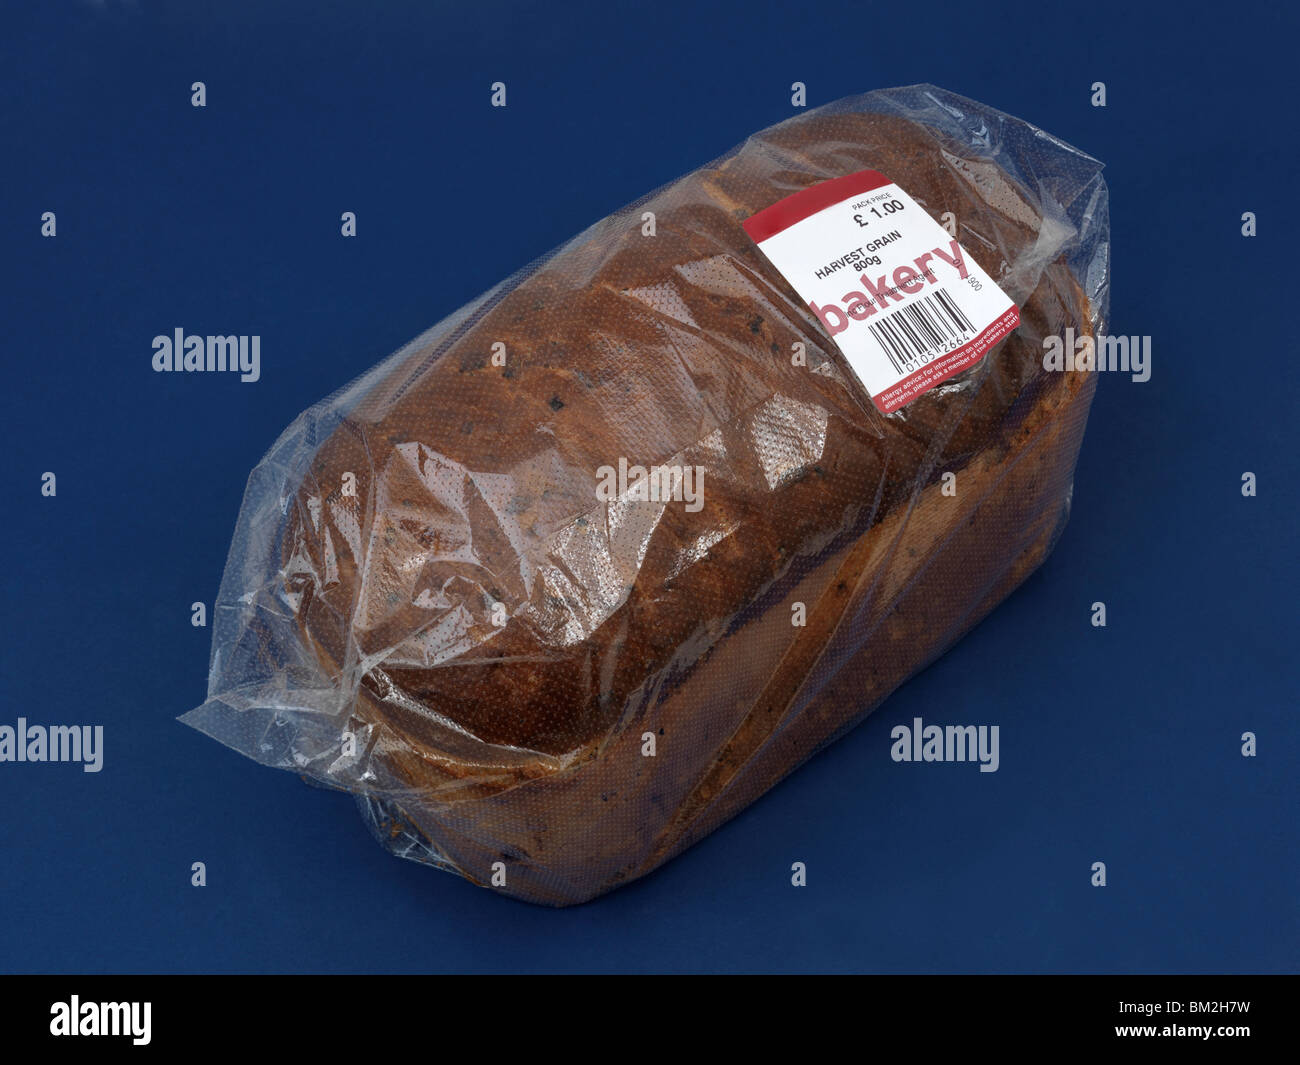 Miche de pain brun enveloppé dans du plastique Banque D'Images